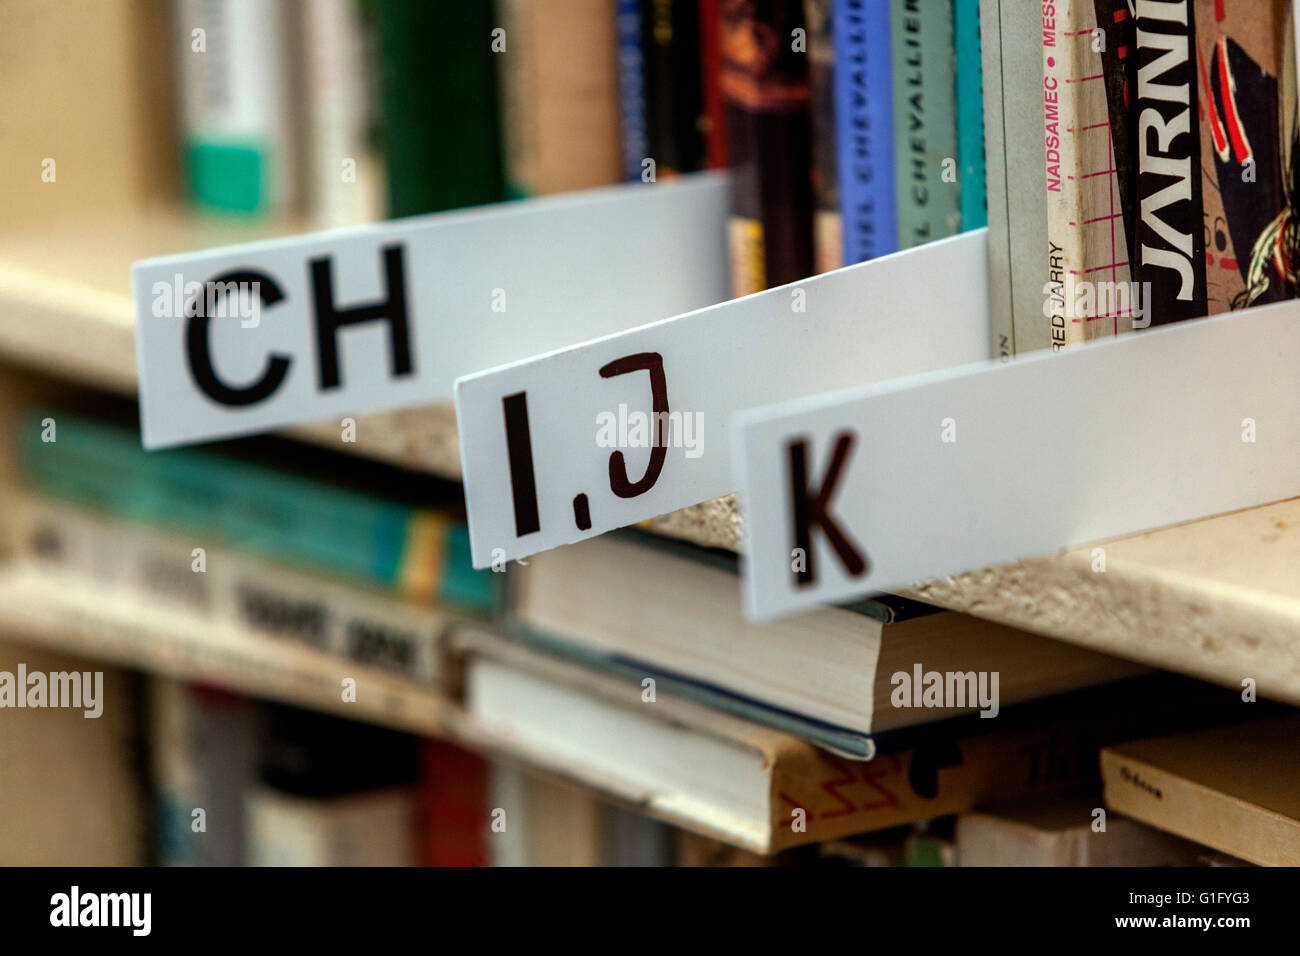 Ordinamento alfabetico dei libri giacenti sugli scaffali, libri della biblioteca sullo scaffale Foto Stock